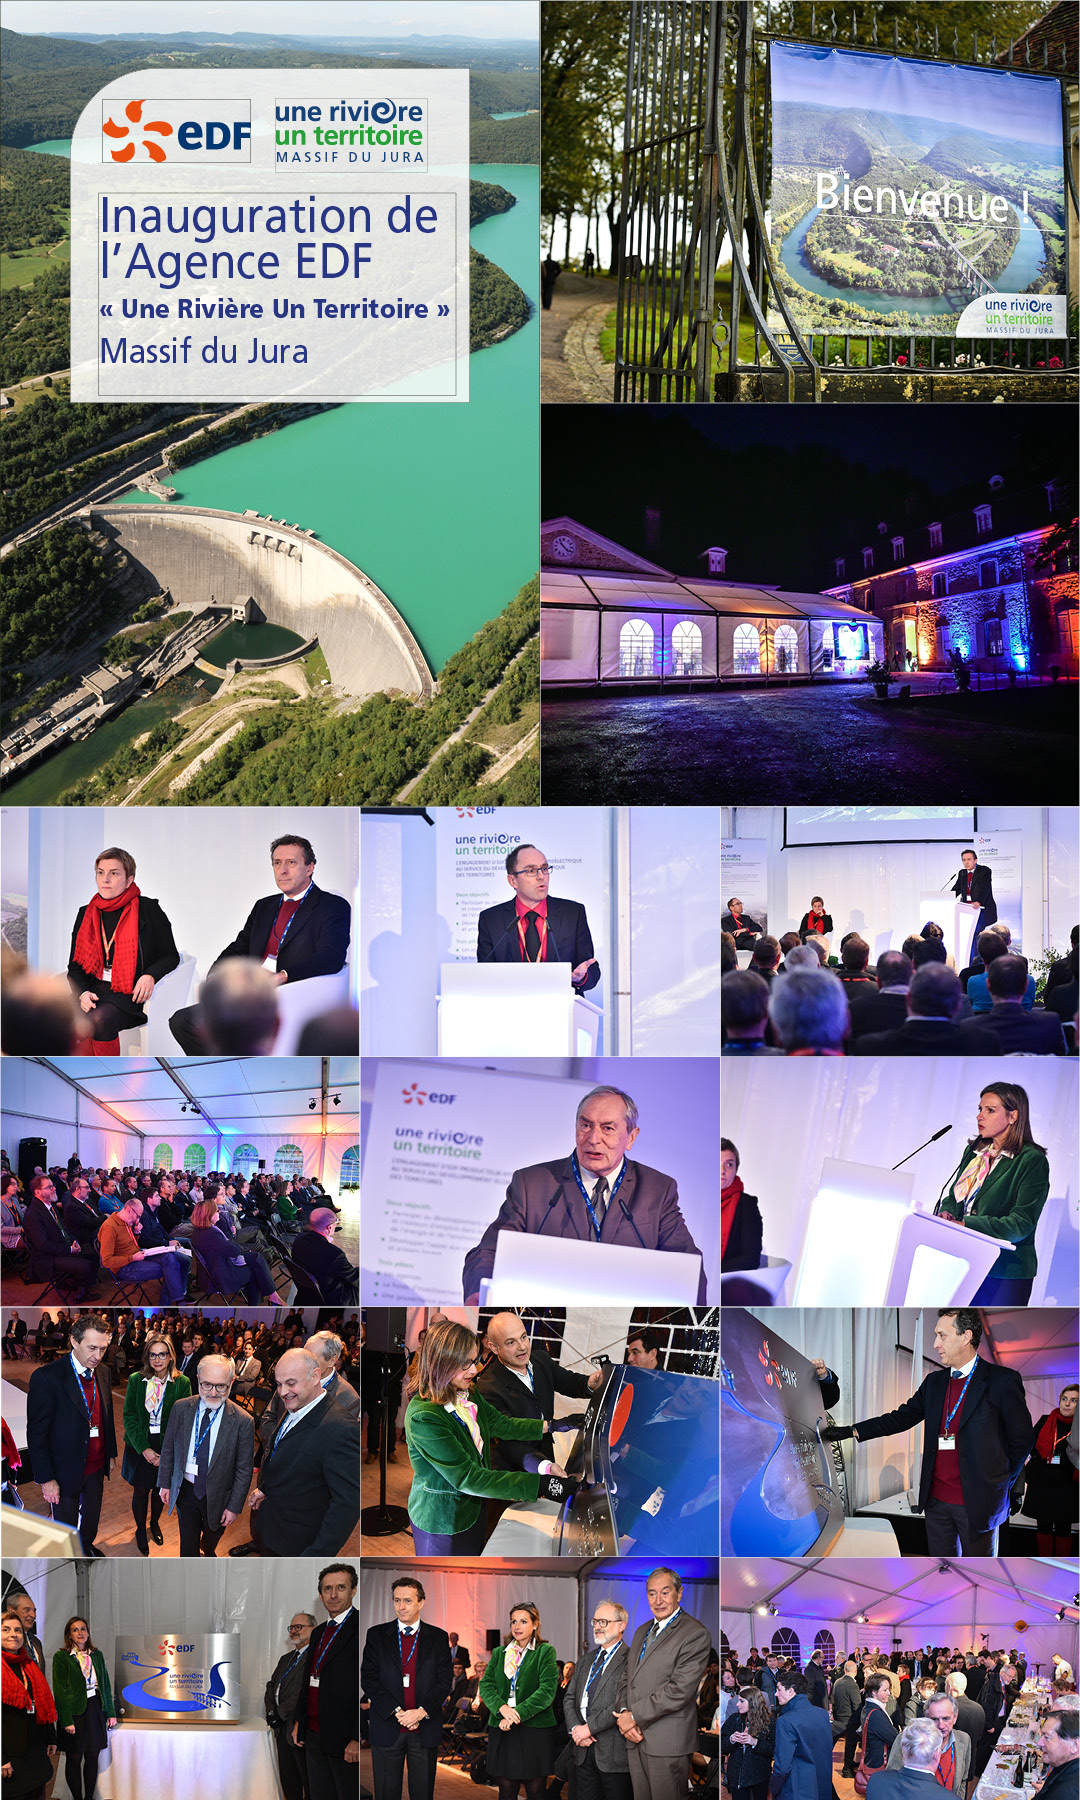 EDF - Inauguration de l'Agence Une Rivière Un Territoire